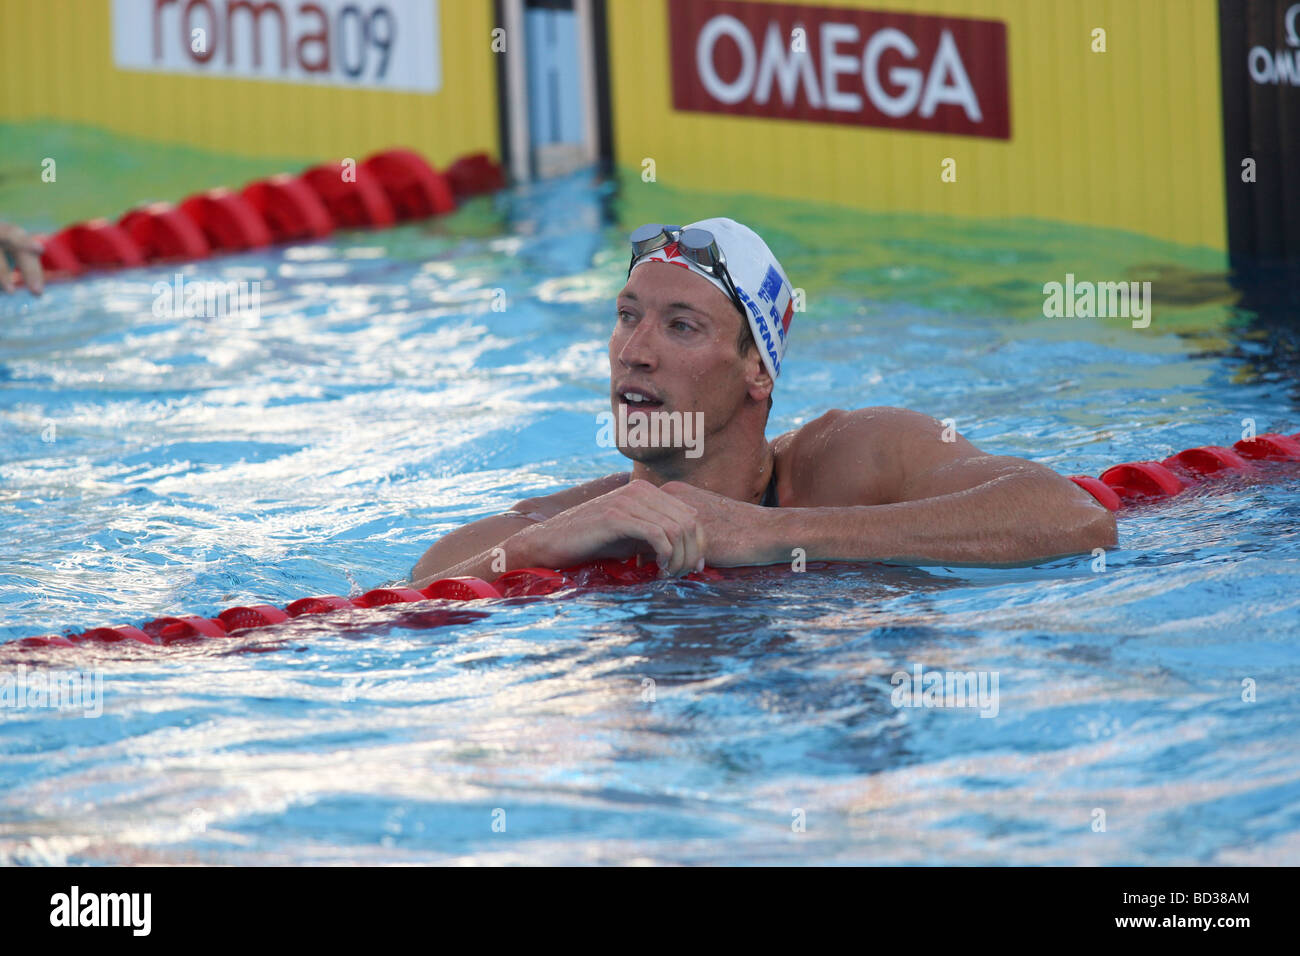 Alain Bernard de la concurrence sur le 100 m nage libre aux Championnats du monde de natation de la FINA à Rome Italie Banque D'Images